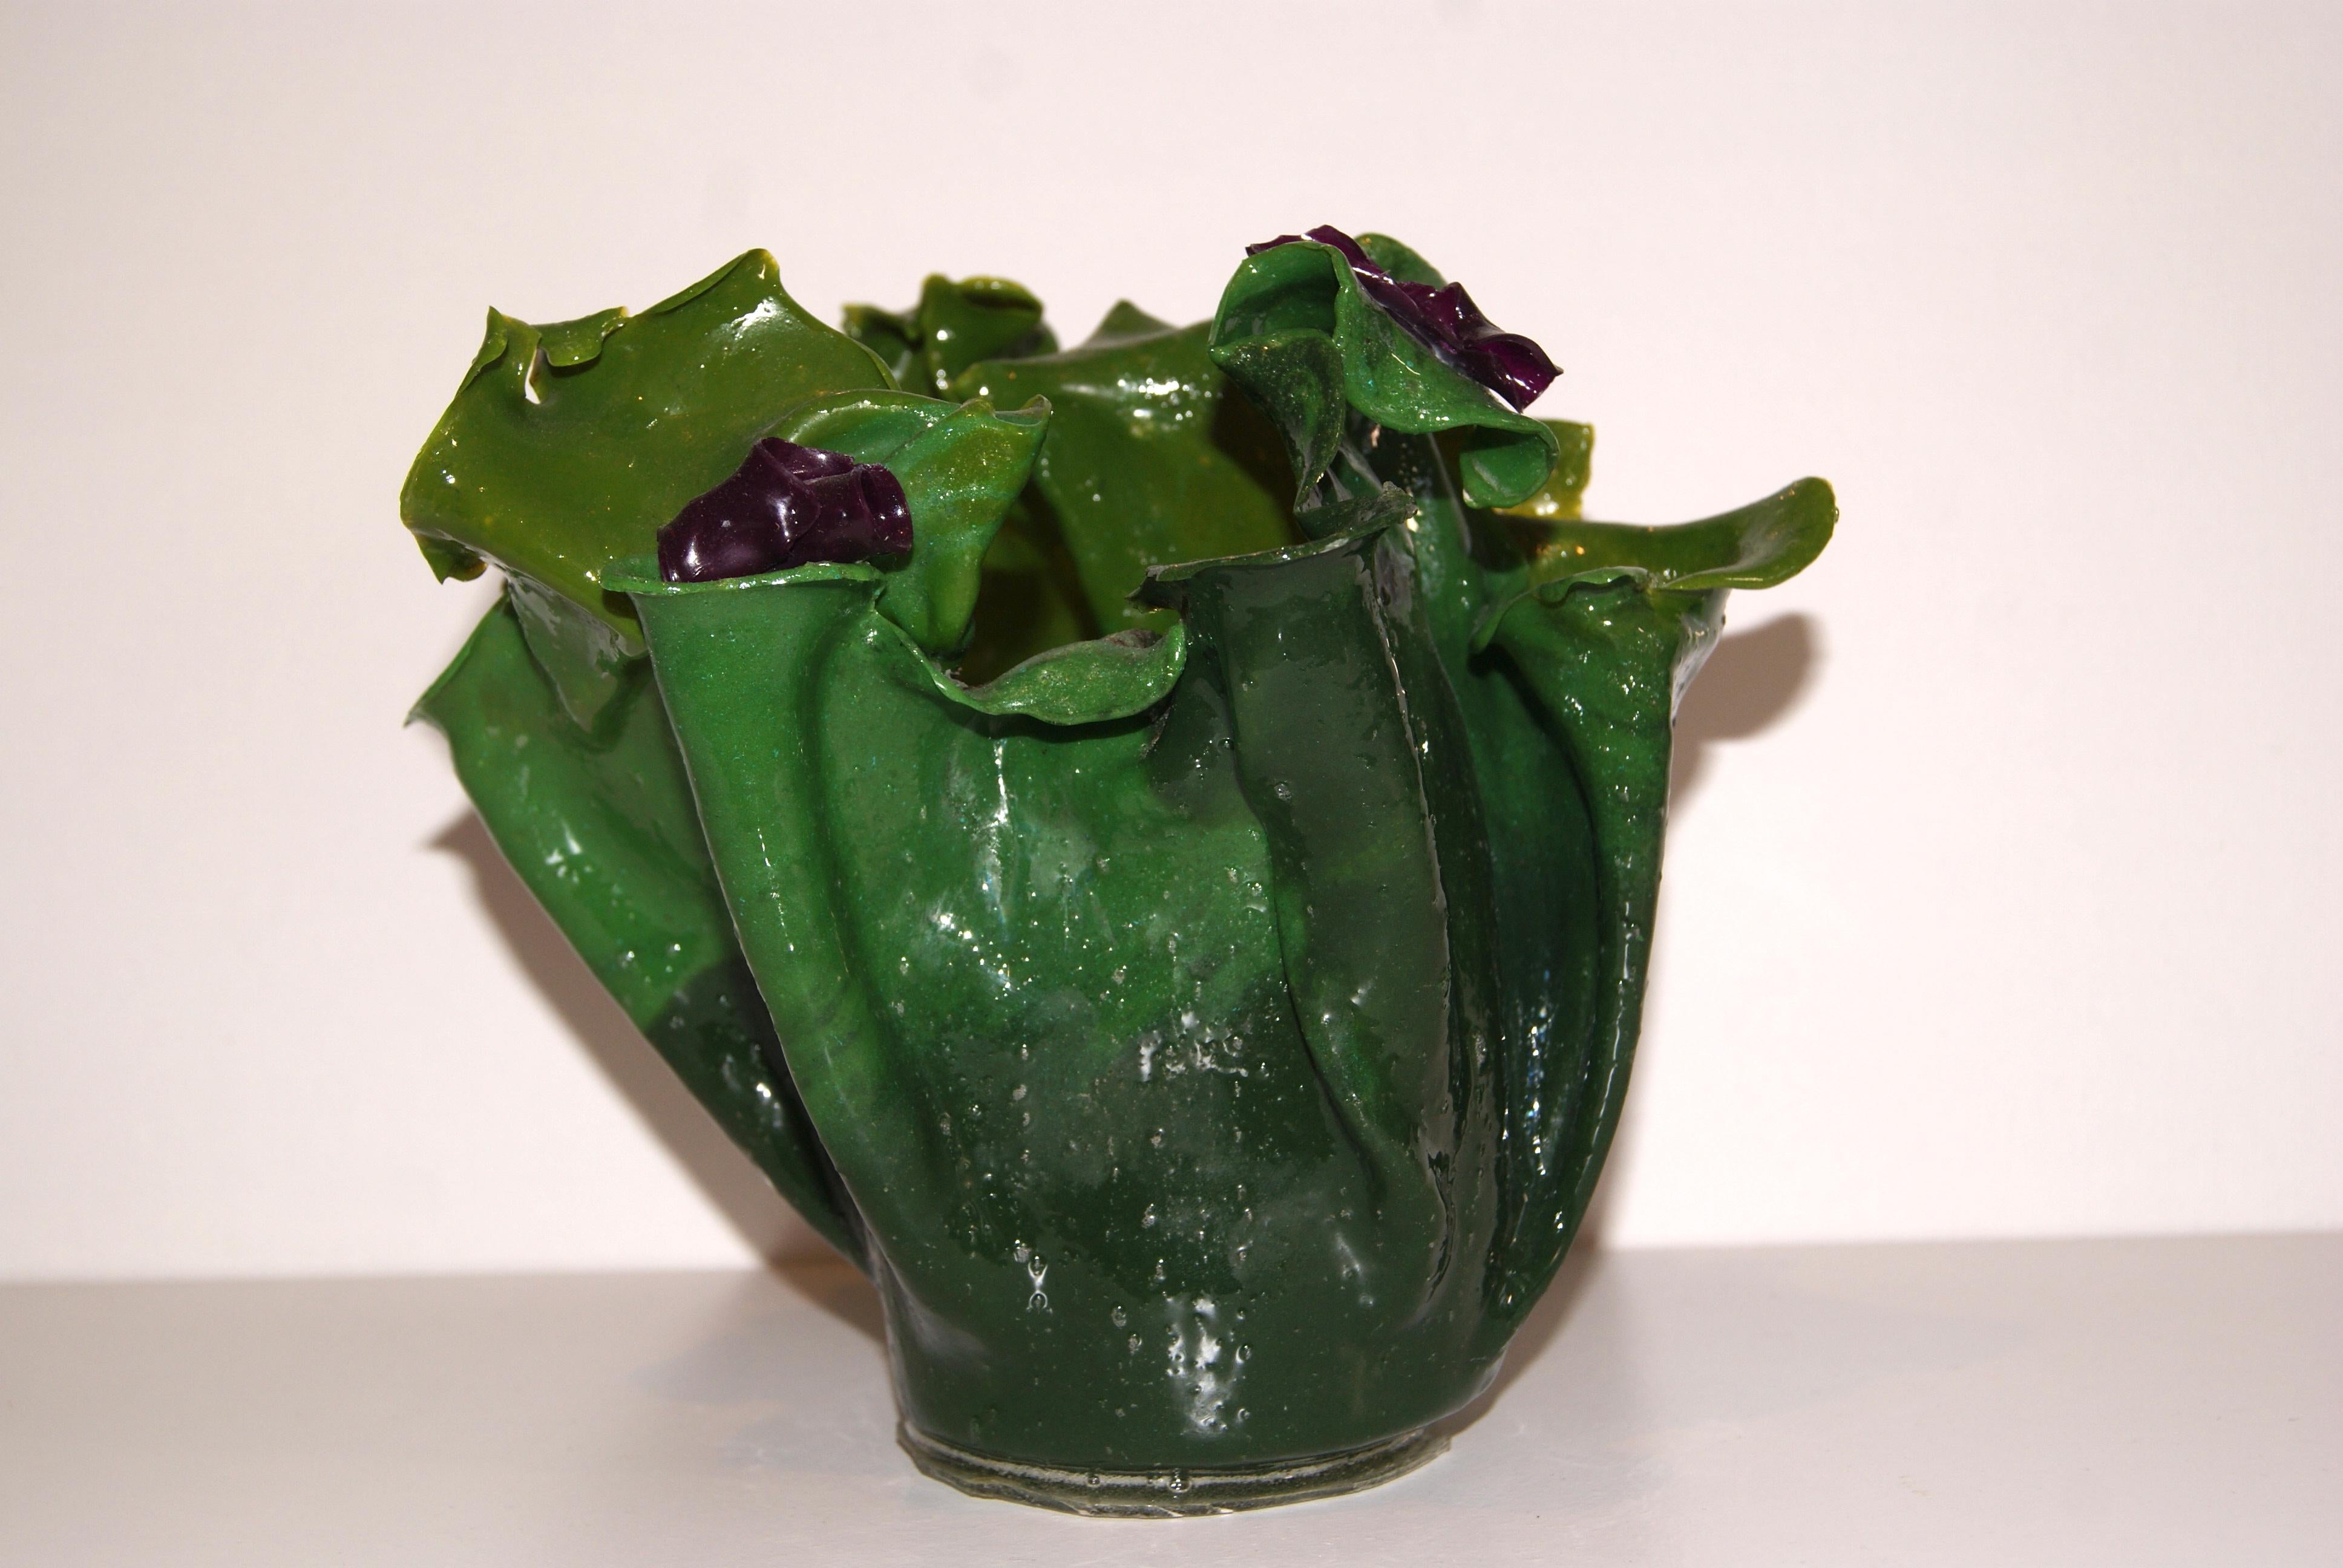 Vase sculptural en résine dans des tons de vert avec des touches de violet.